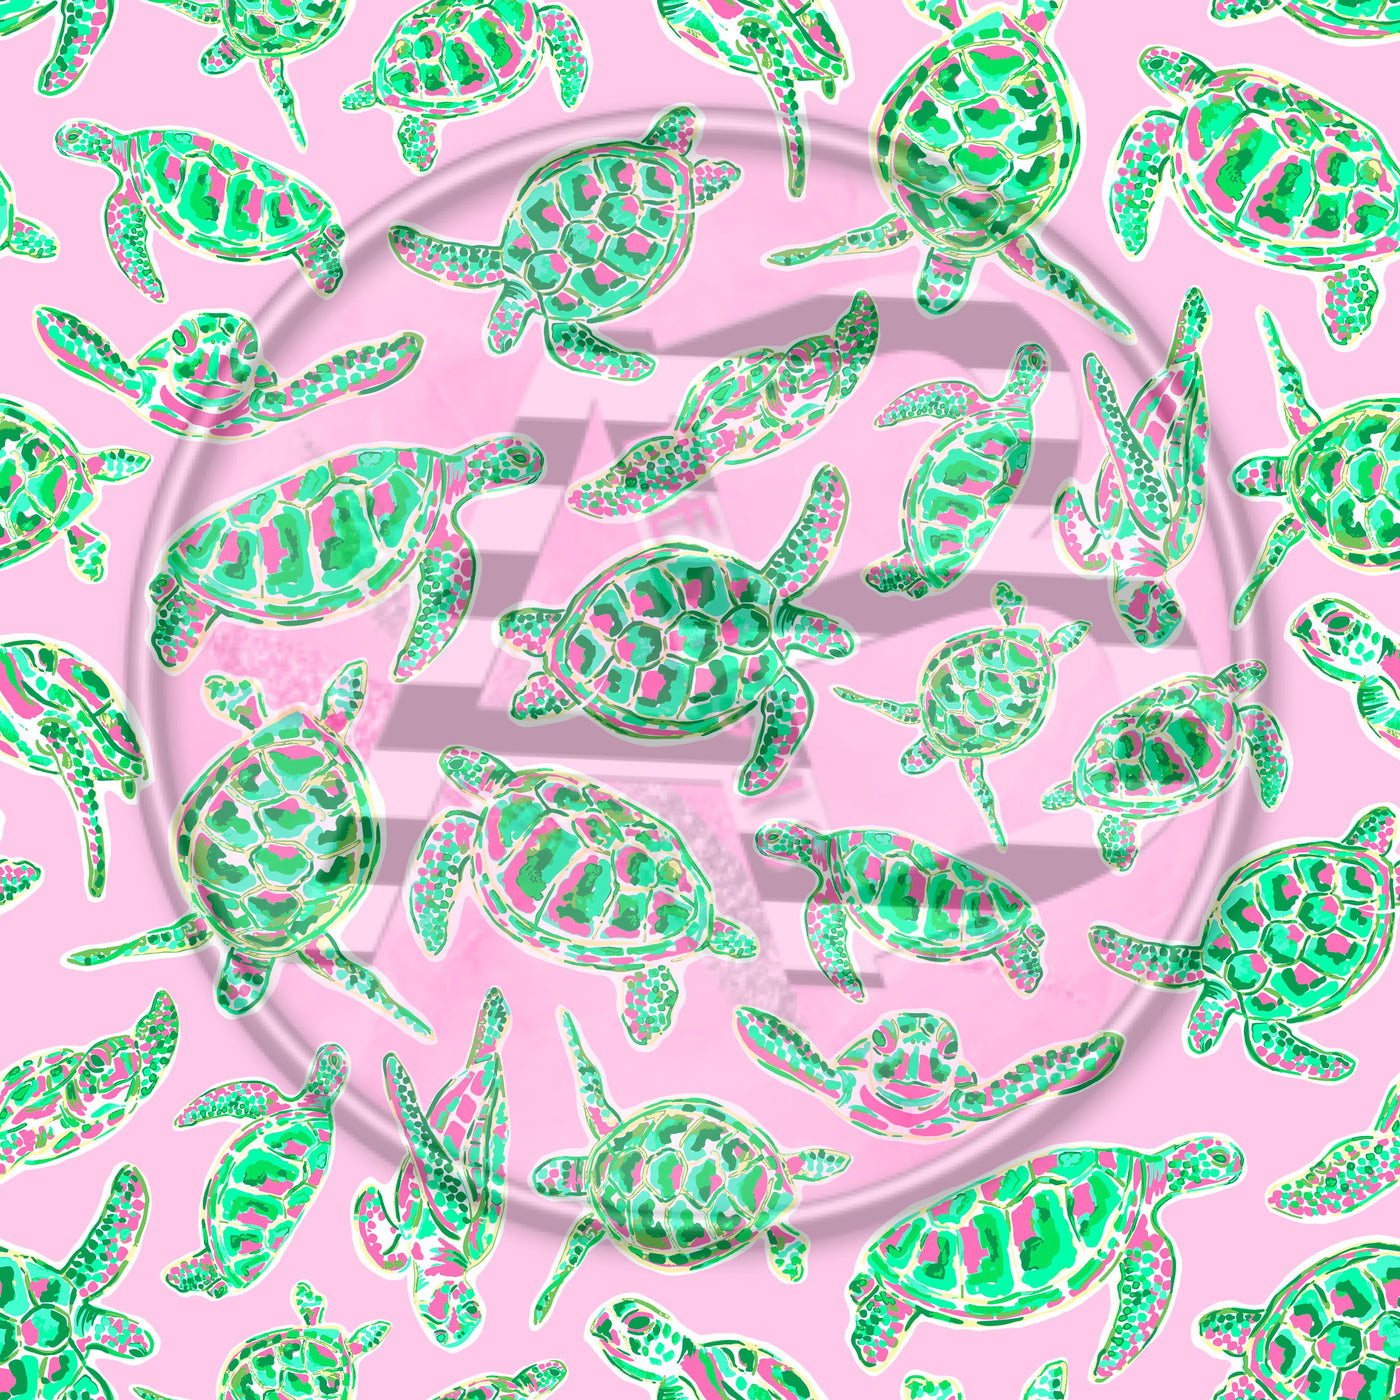 Adhesive Patterned Vinyl - Sea Turtle 2222